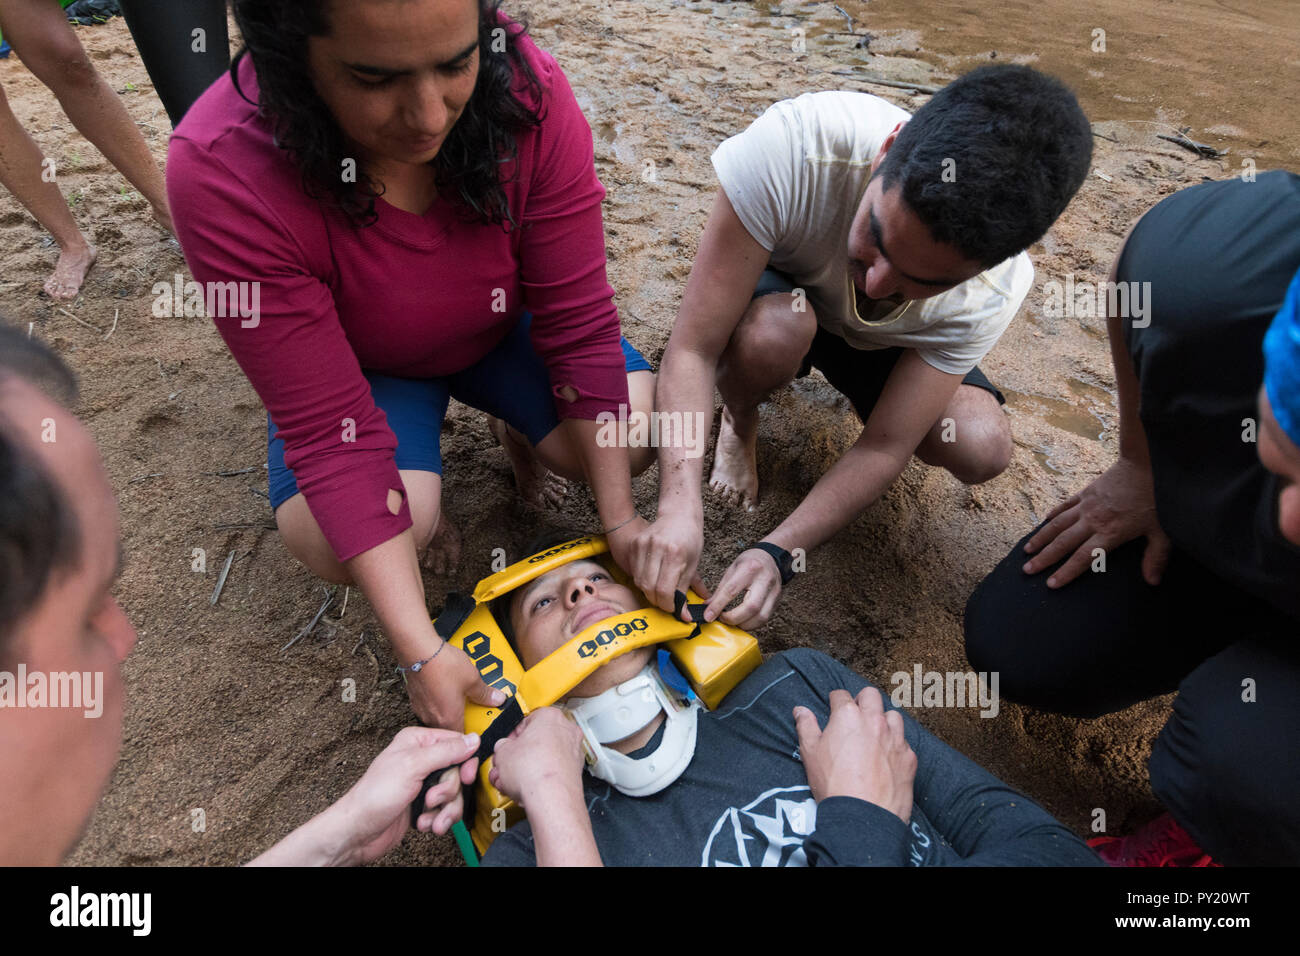 Kopf Wegfahrsperre während einer Rückwand Evakuierungsübung in der Wüste gesichert werden First Responder WFR Kurs, el antibiótico Wasserfall, Chiapas, Mexiko Stockfoto